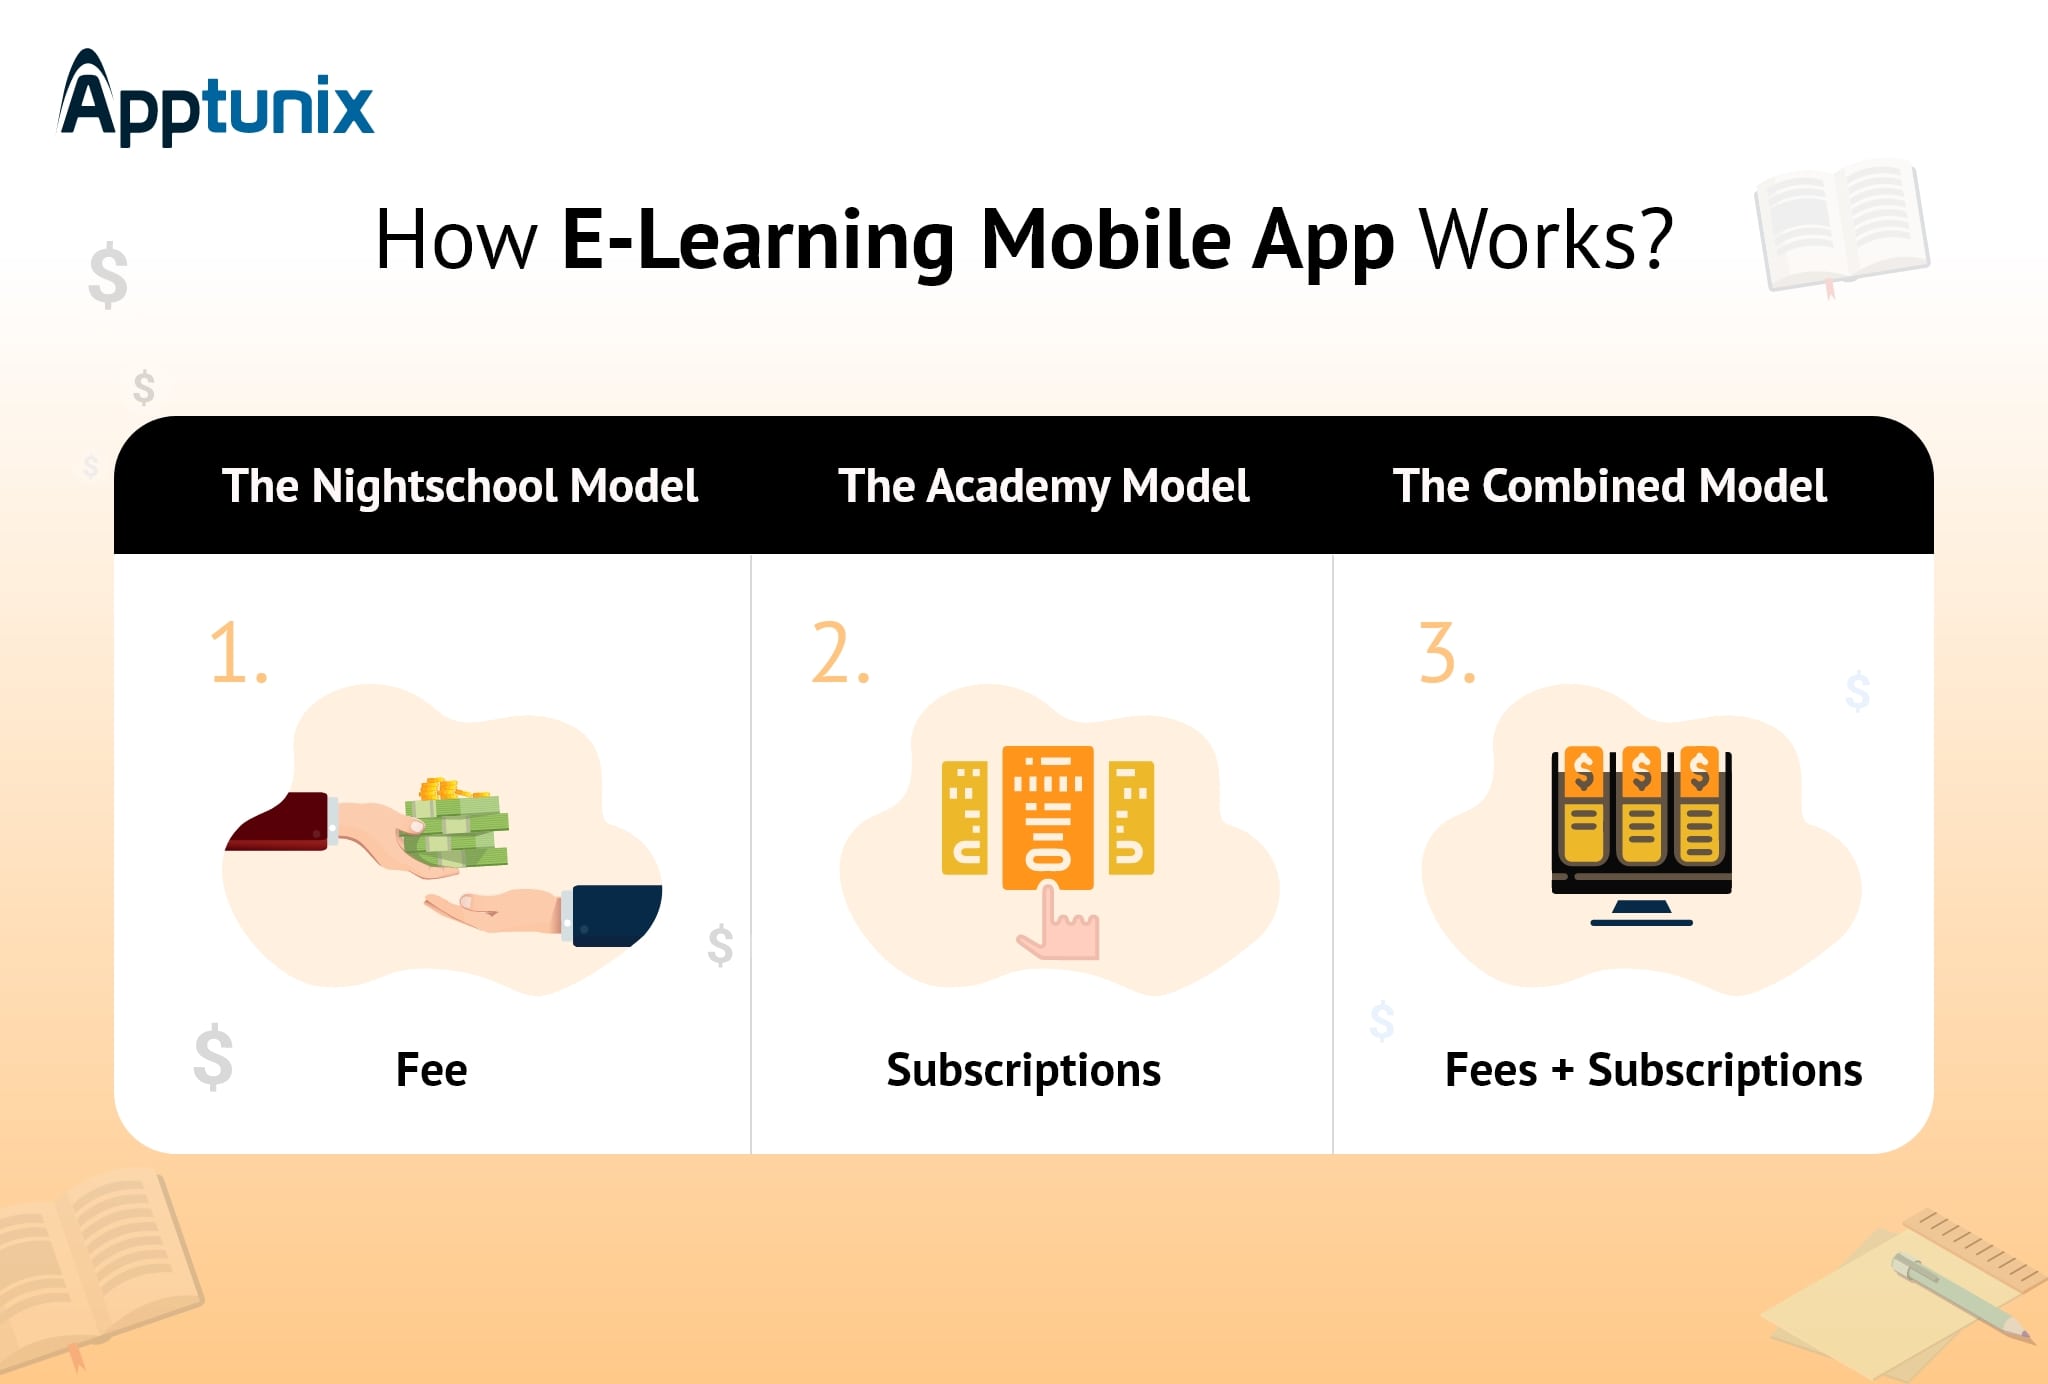 E-learning mobile app business model